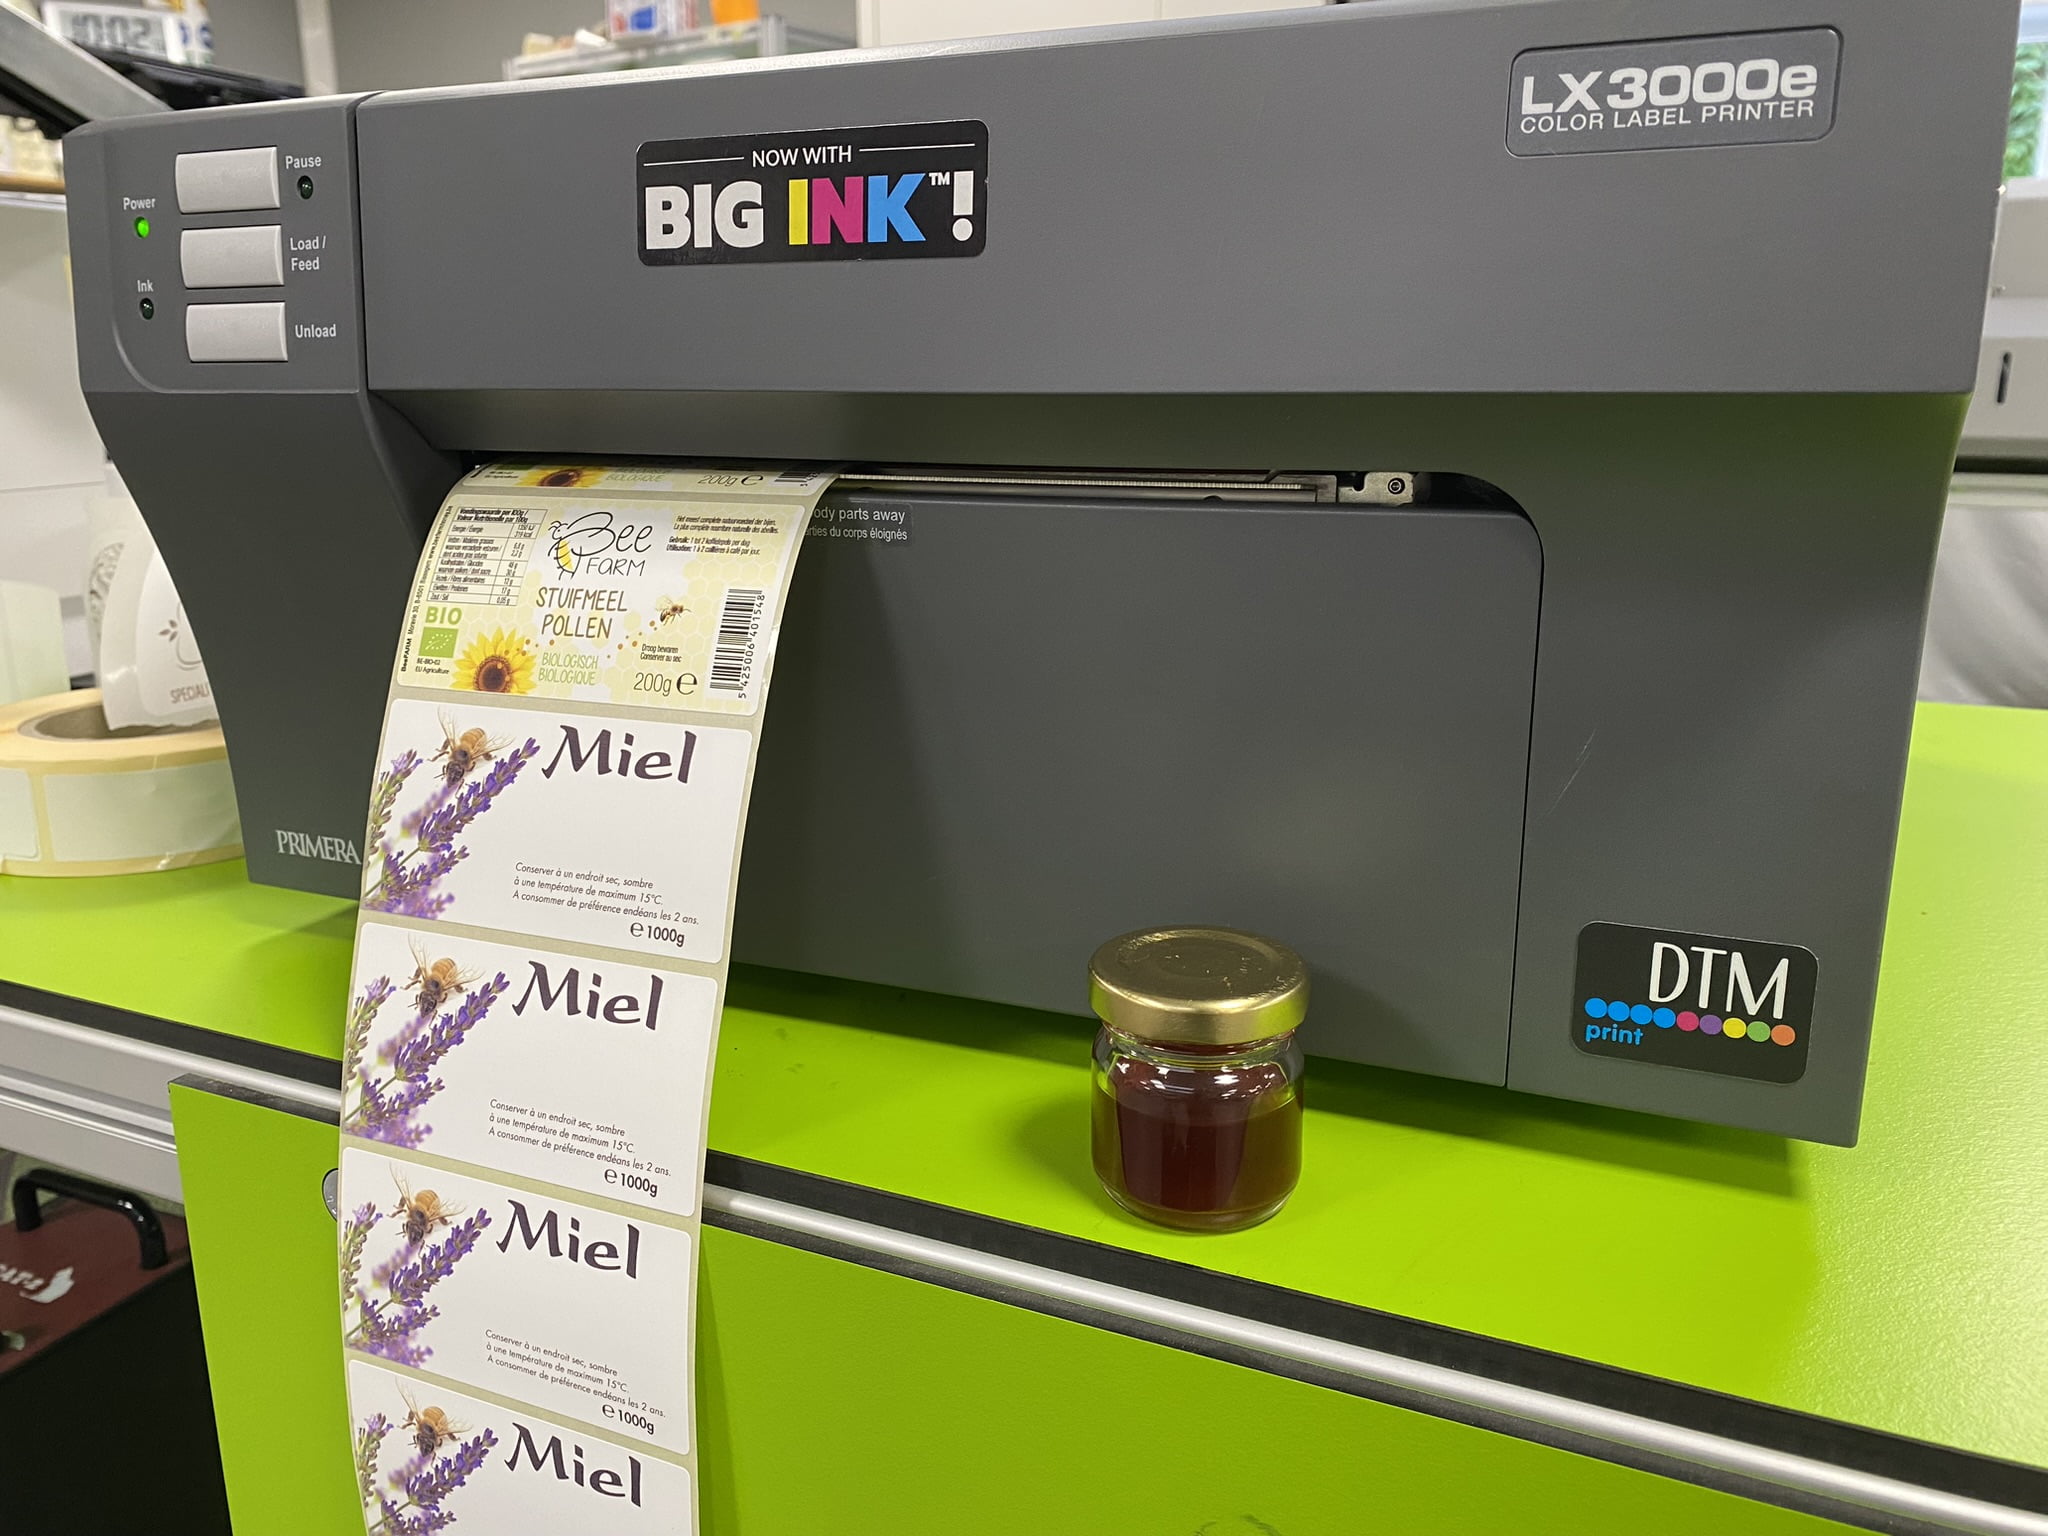 Les 10 principaux avantages d'une imprimante d'étiquettes couleur